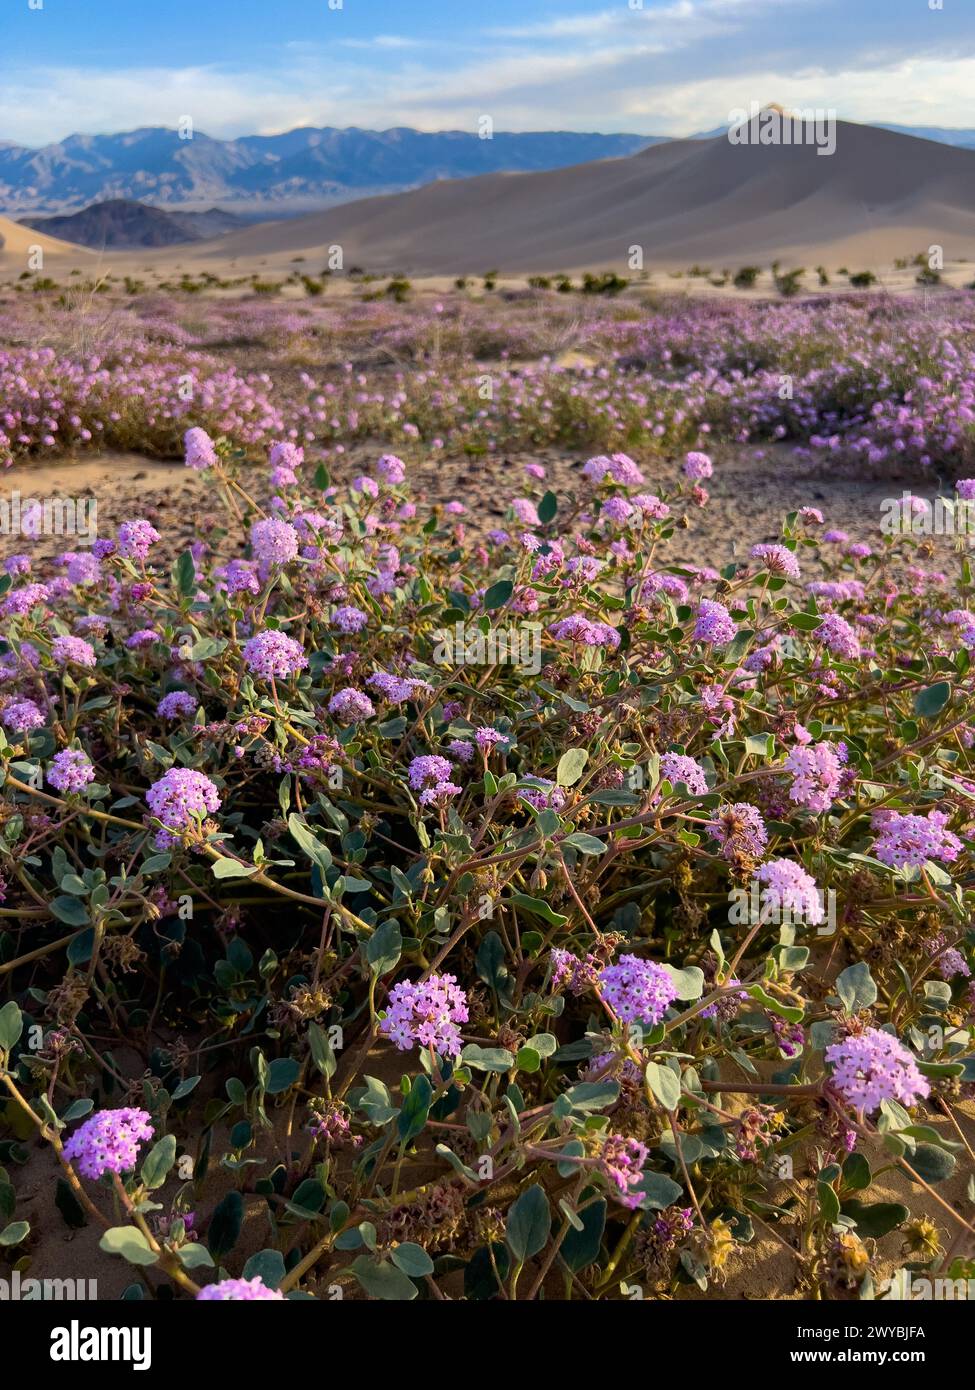 Superfioritura di fiori selvatici nelle spettacolari dune di sabbia di Ibex nel Death Valley National Park, California, USA Foto Stock